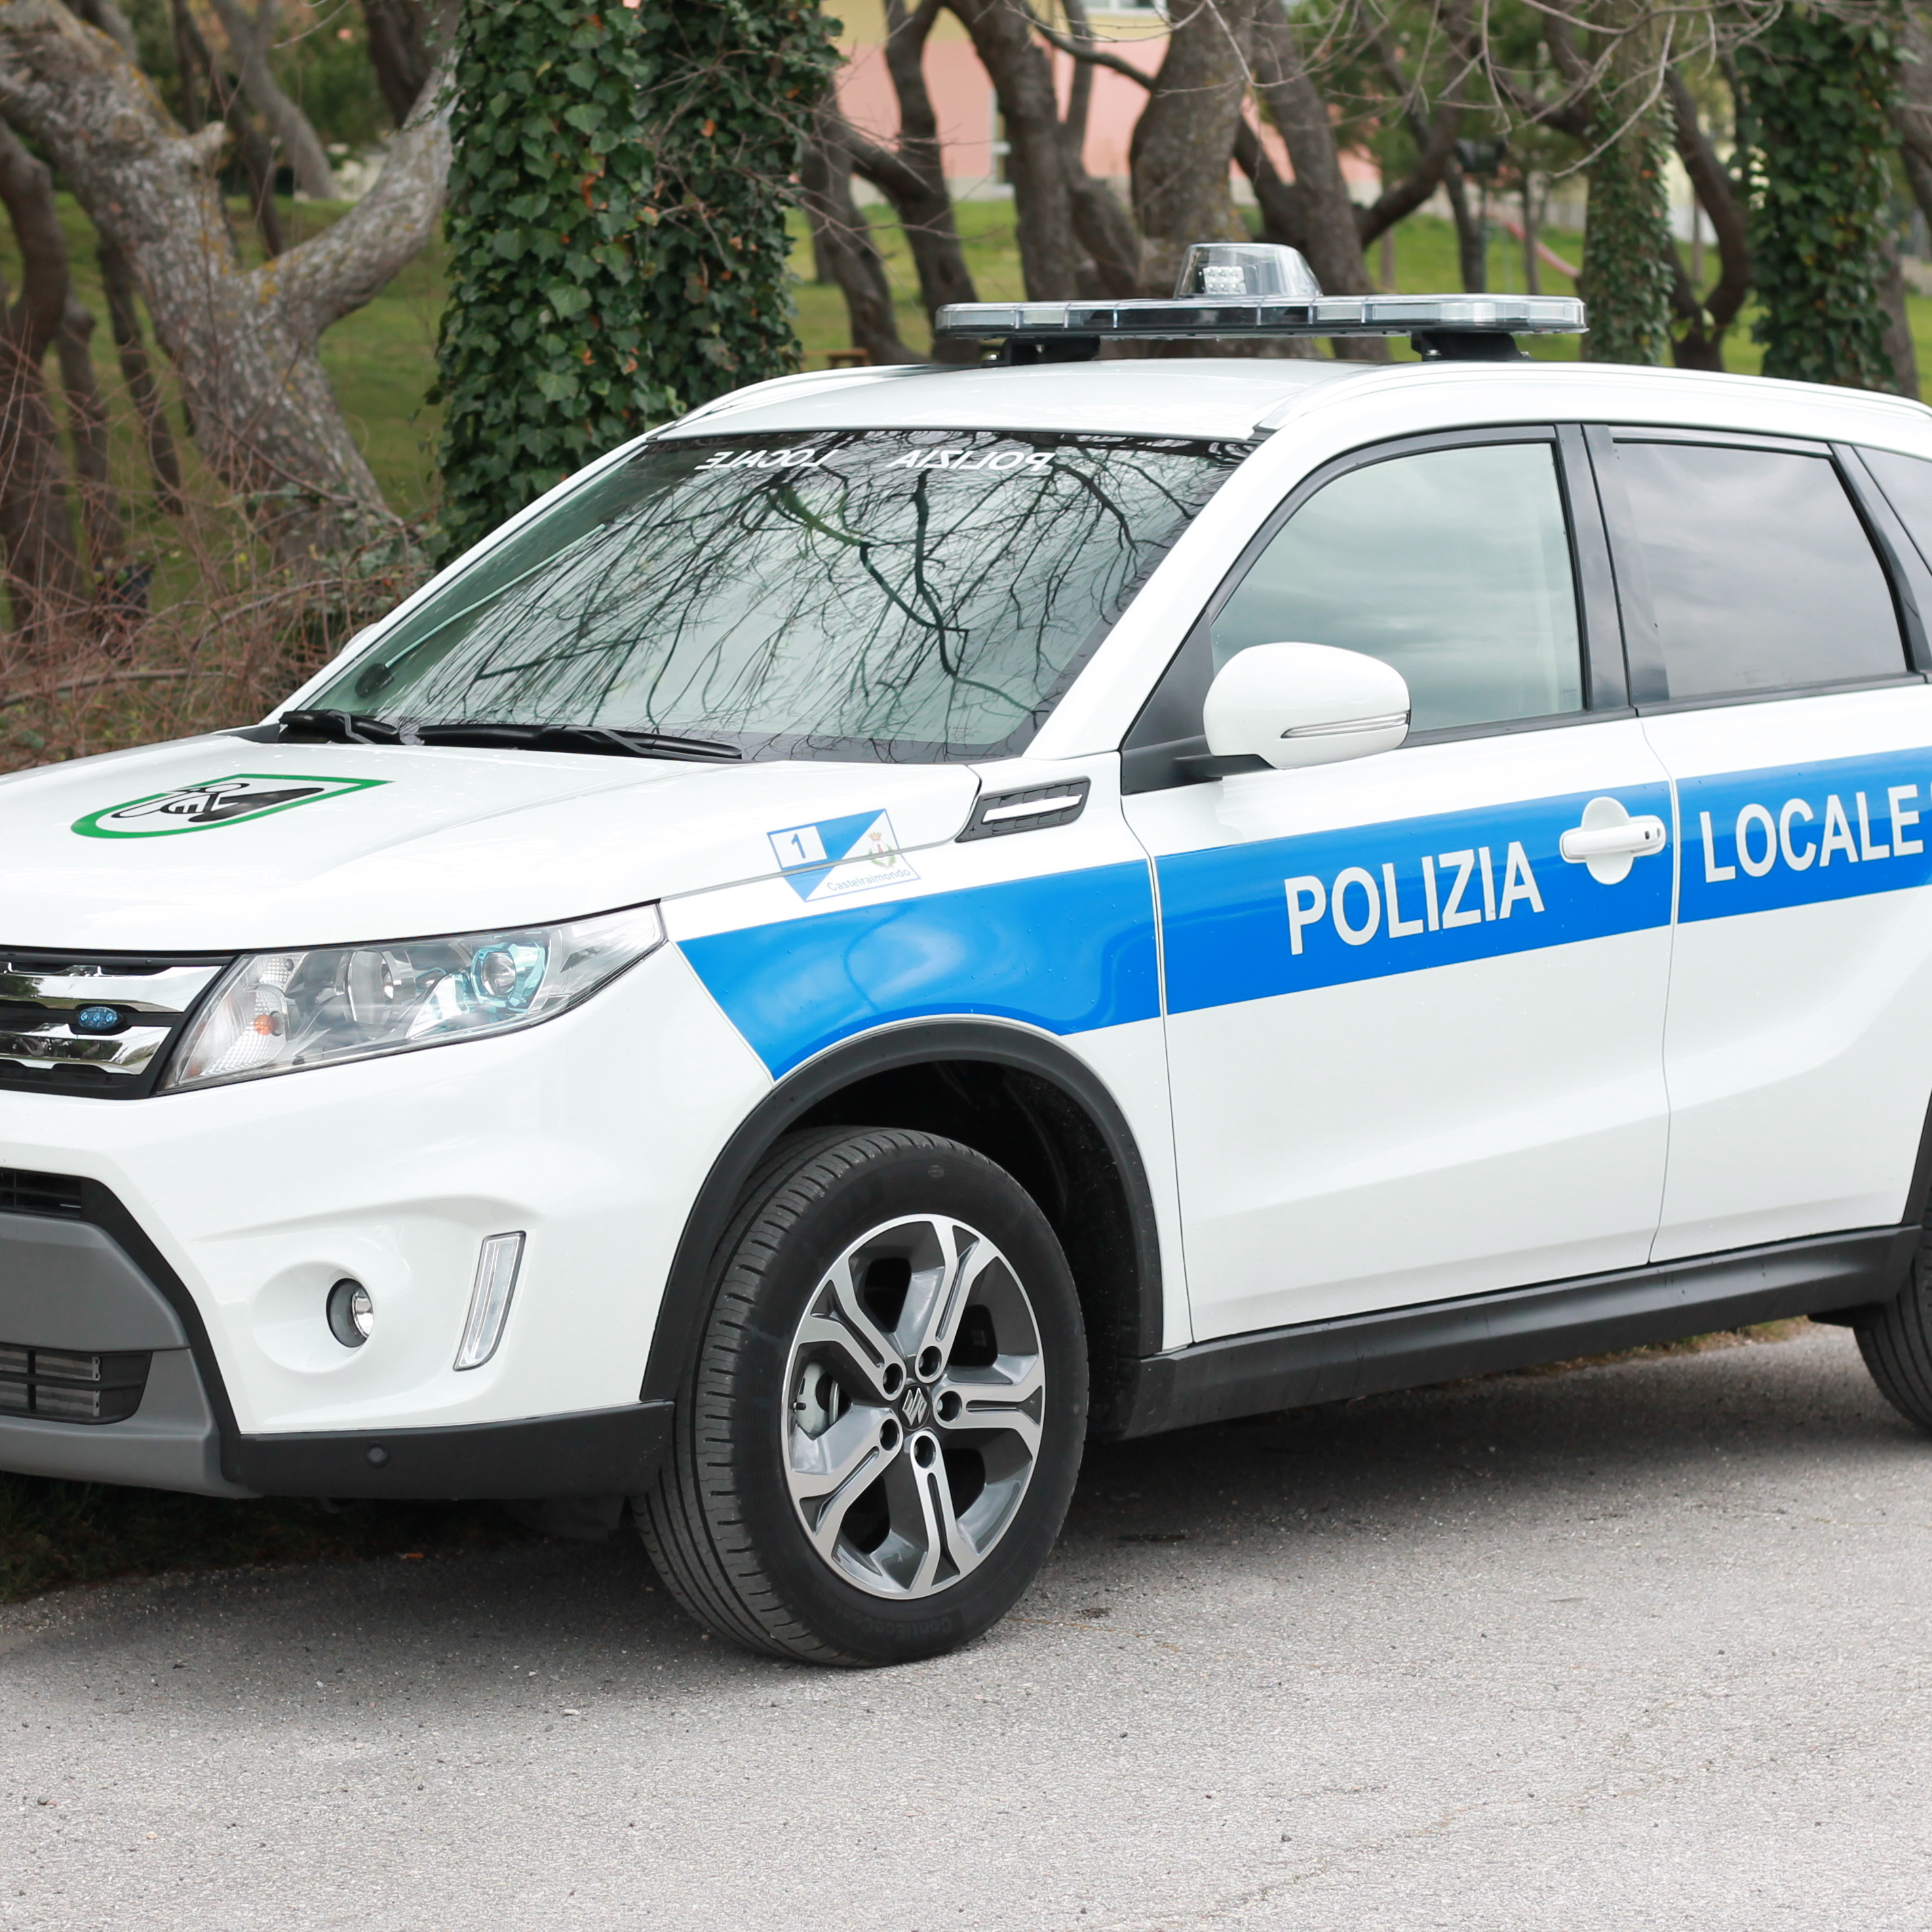 allestimento-esterno-medio-Polizia-Locale-barra-leptos-ultrapiatta-grafica-personalizzata-celiani-allestimento-veicoli